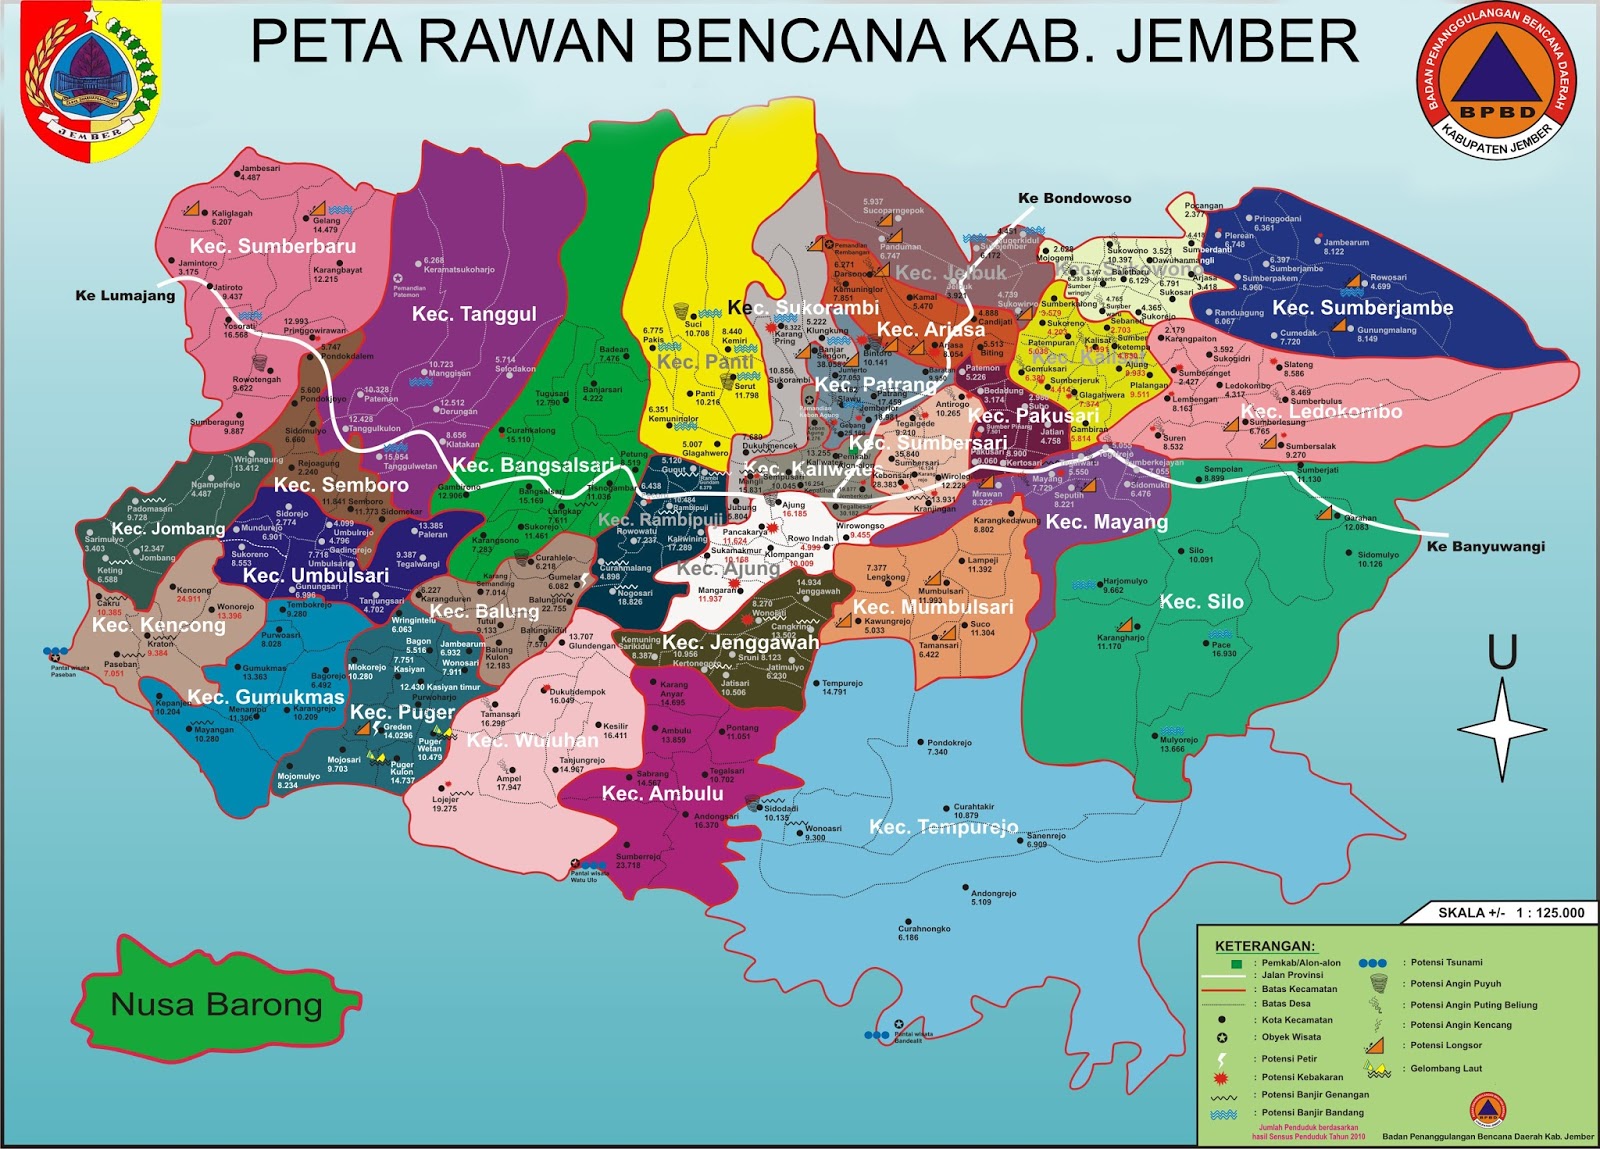 Peta Rawan Bencana BPBD Kabupaten Jember